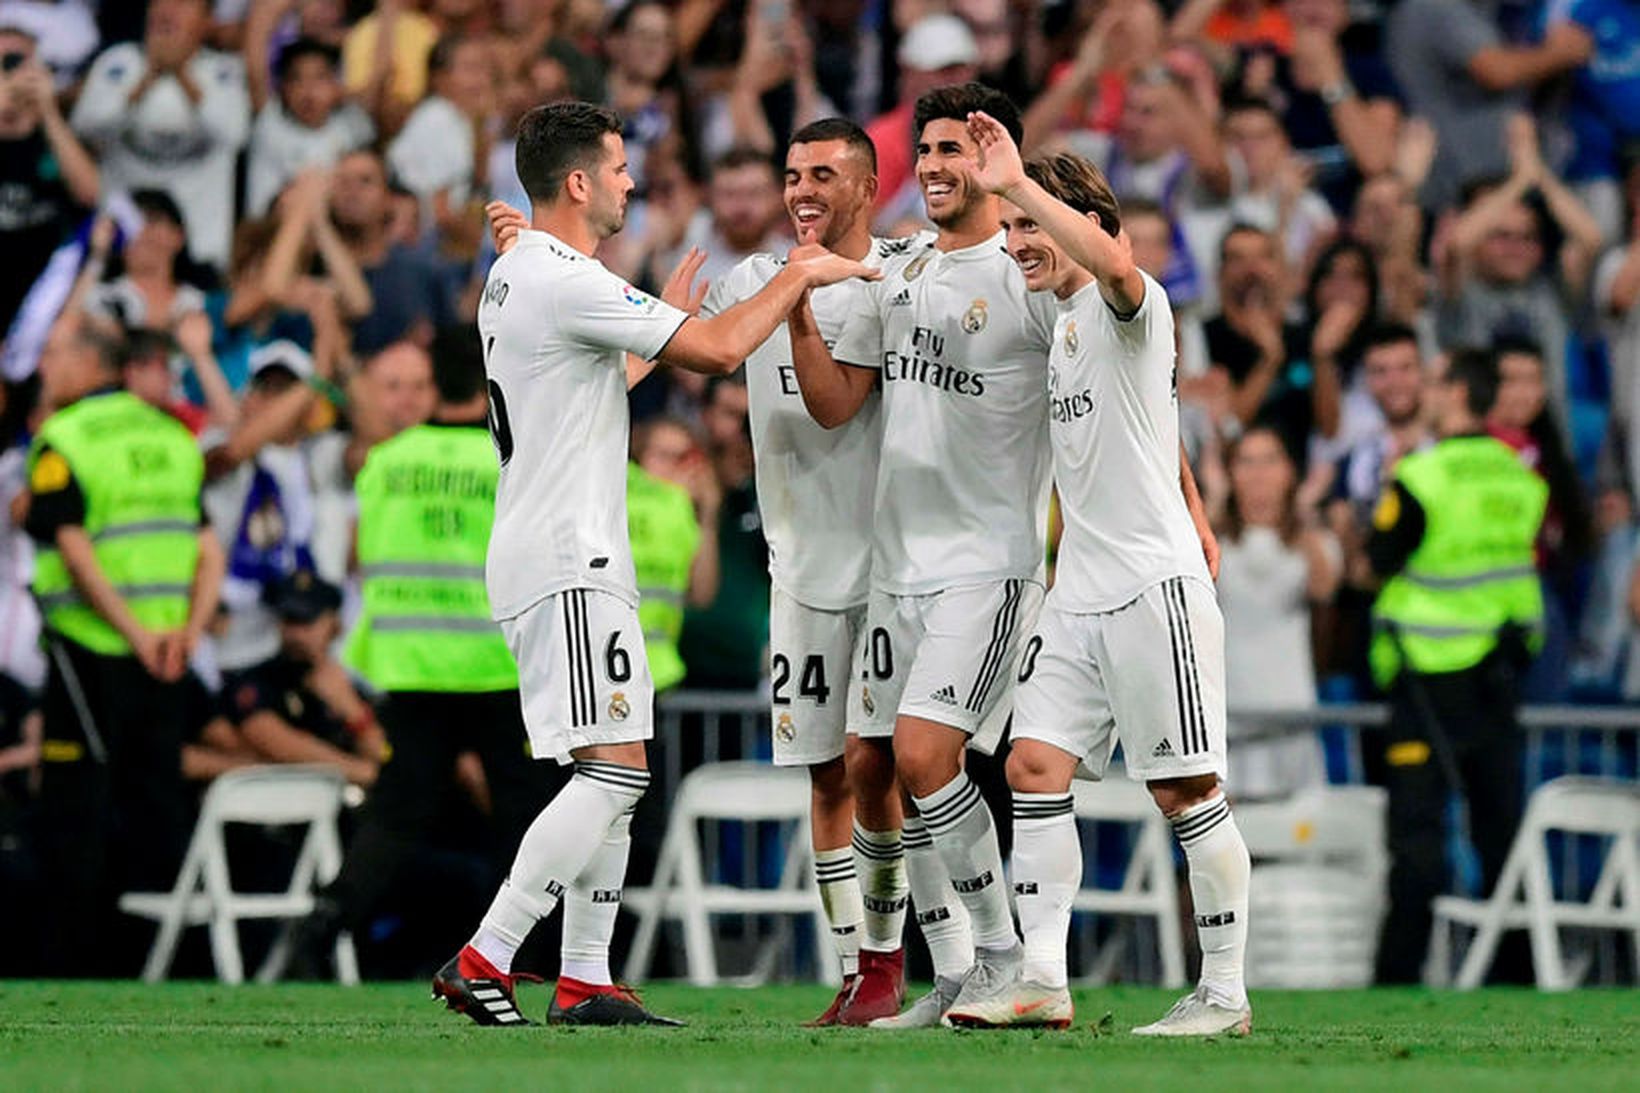 Leikmenn Real Madrid fagna sigurmarki Marco Asensio í kvöld.